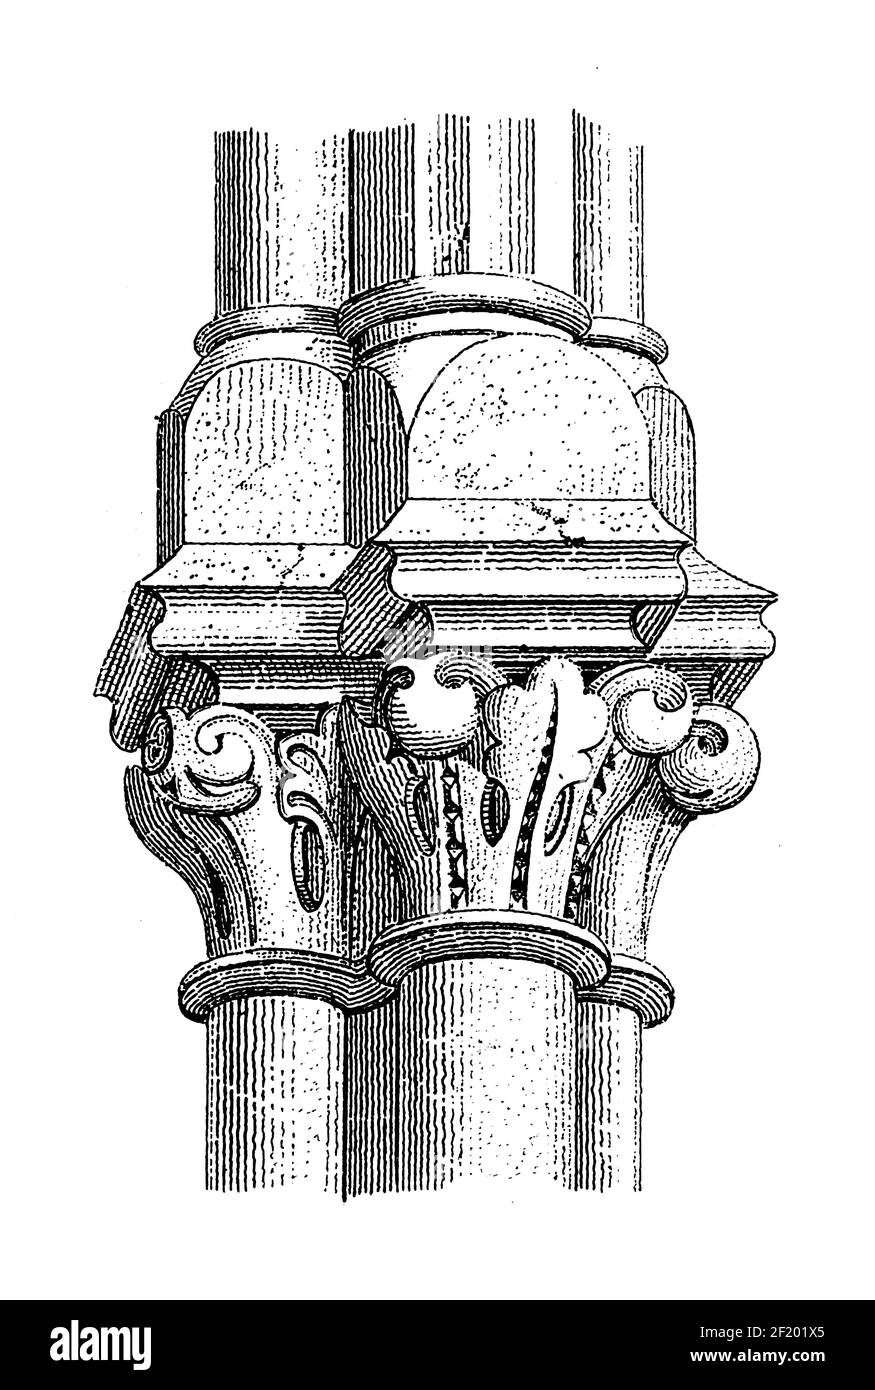 Illustrazione del 19th° secolo del particolare della colonna capitale dal battistero della Basilica di San Gereon. Pubblicato in Systematischer Bilder-Atlas Foto Stock